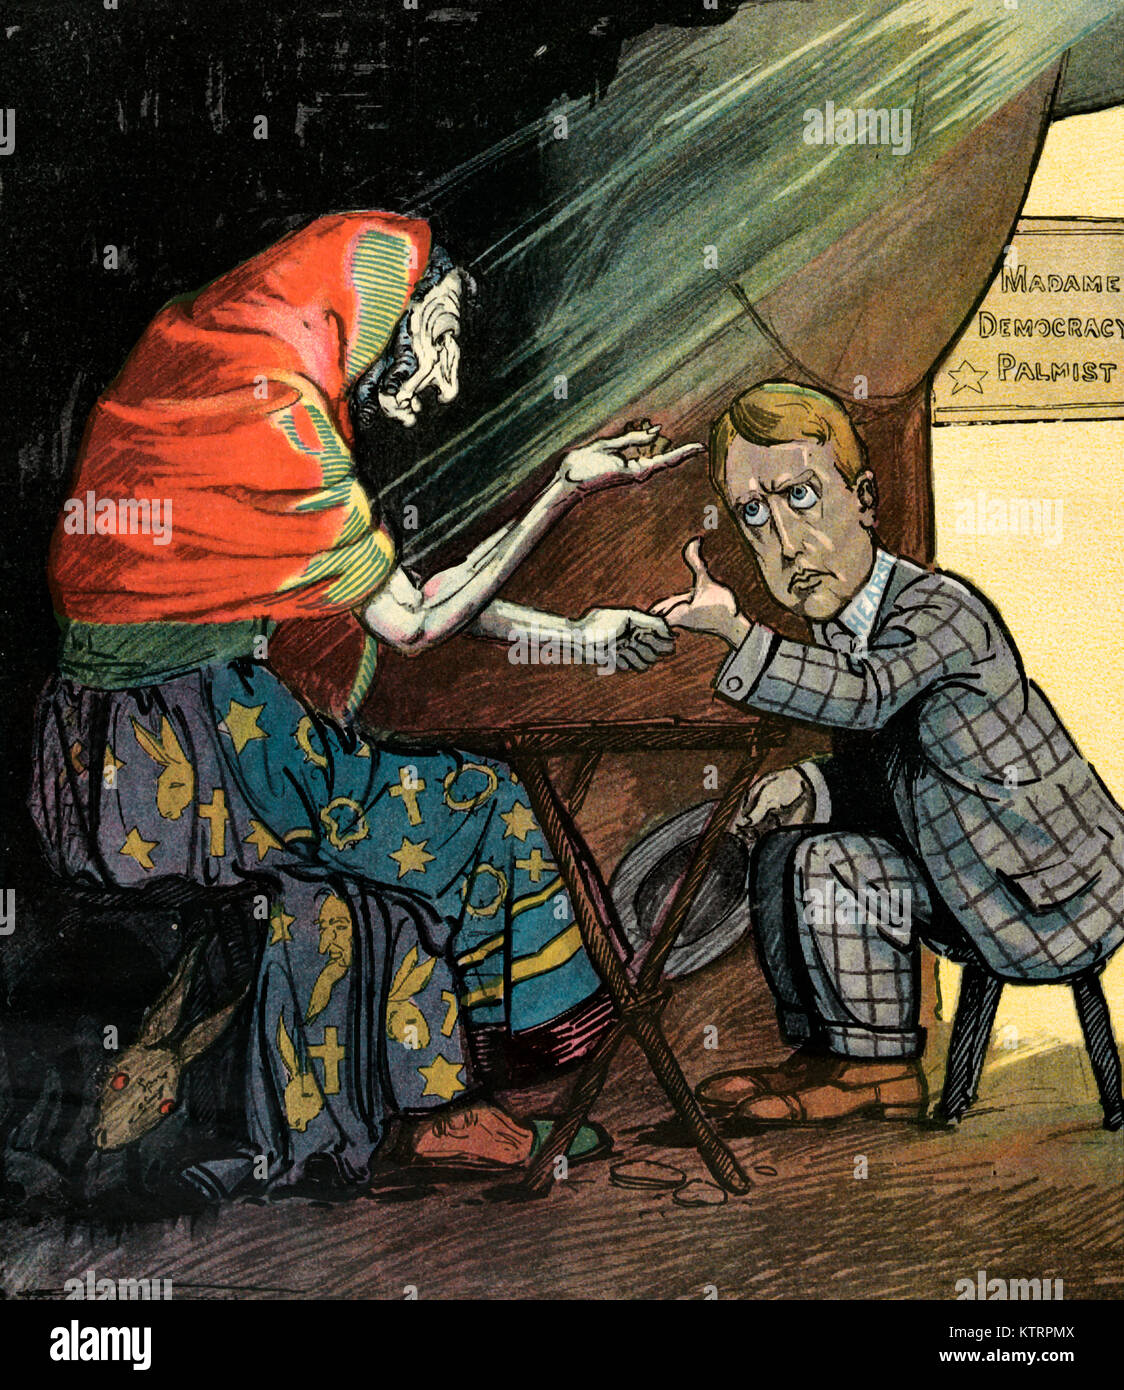 La lecture de son avenir - l'illustration montre une vieille femme, connue sous le nom de 'Madame la démocratie', chiromancien lecture William Randolph Hearst's palm et en parlant de l'avenir. Caricature politique 1906 Banque D'Images